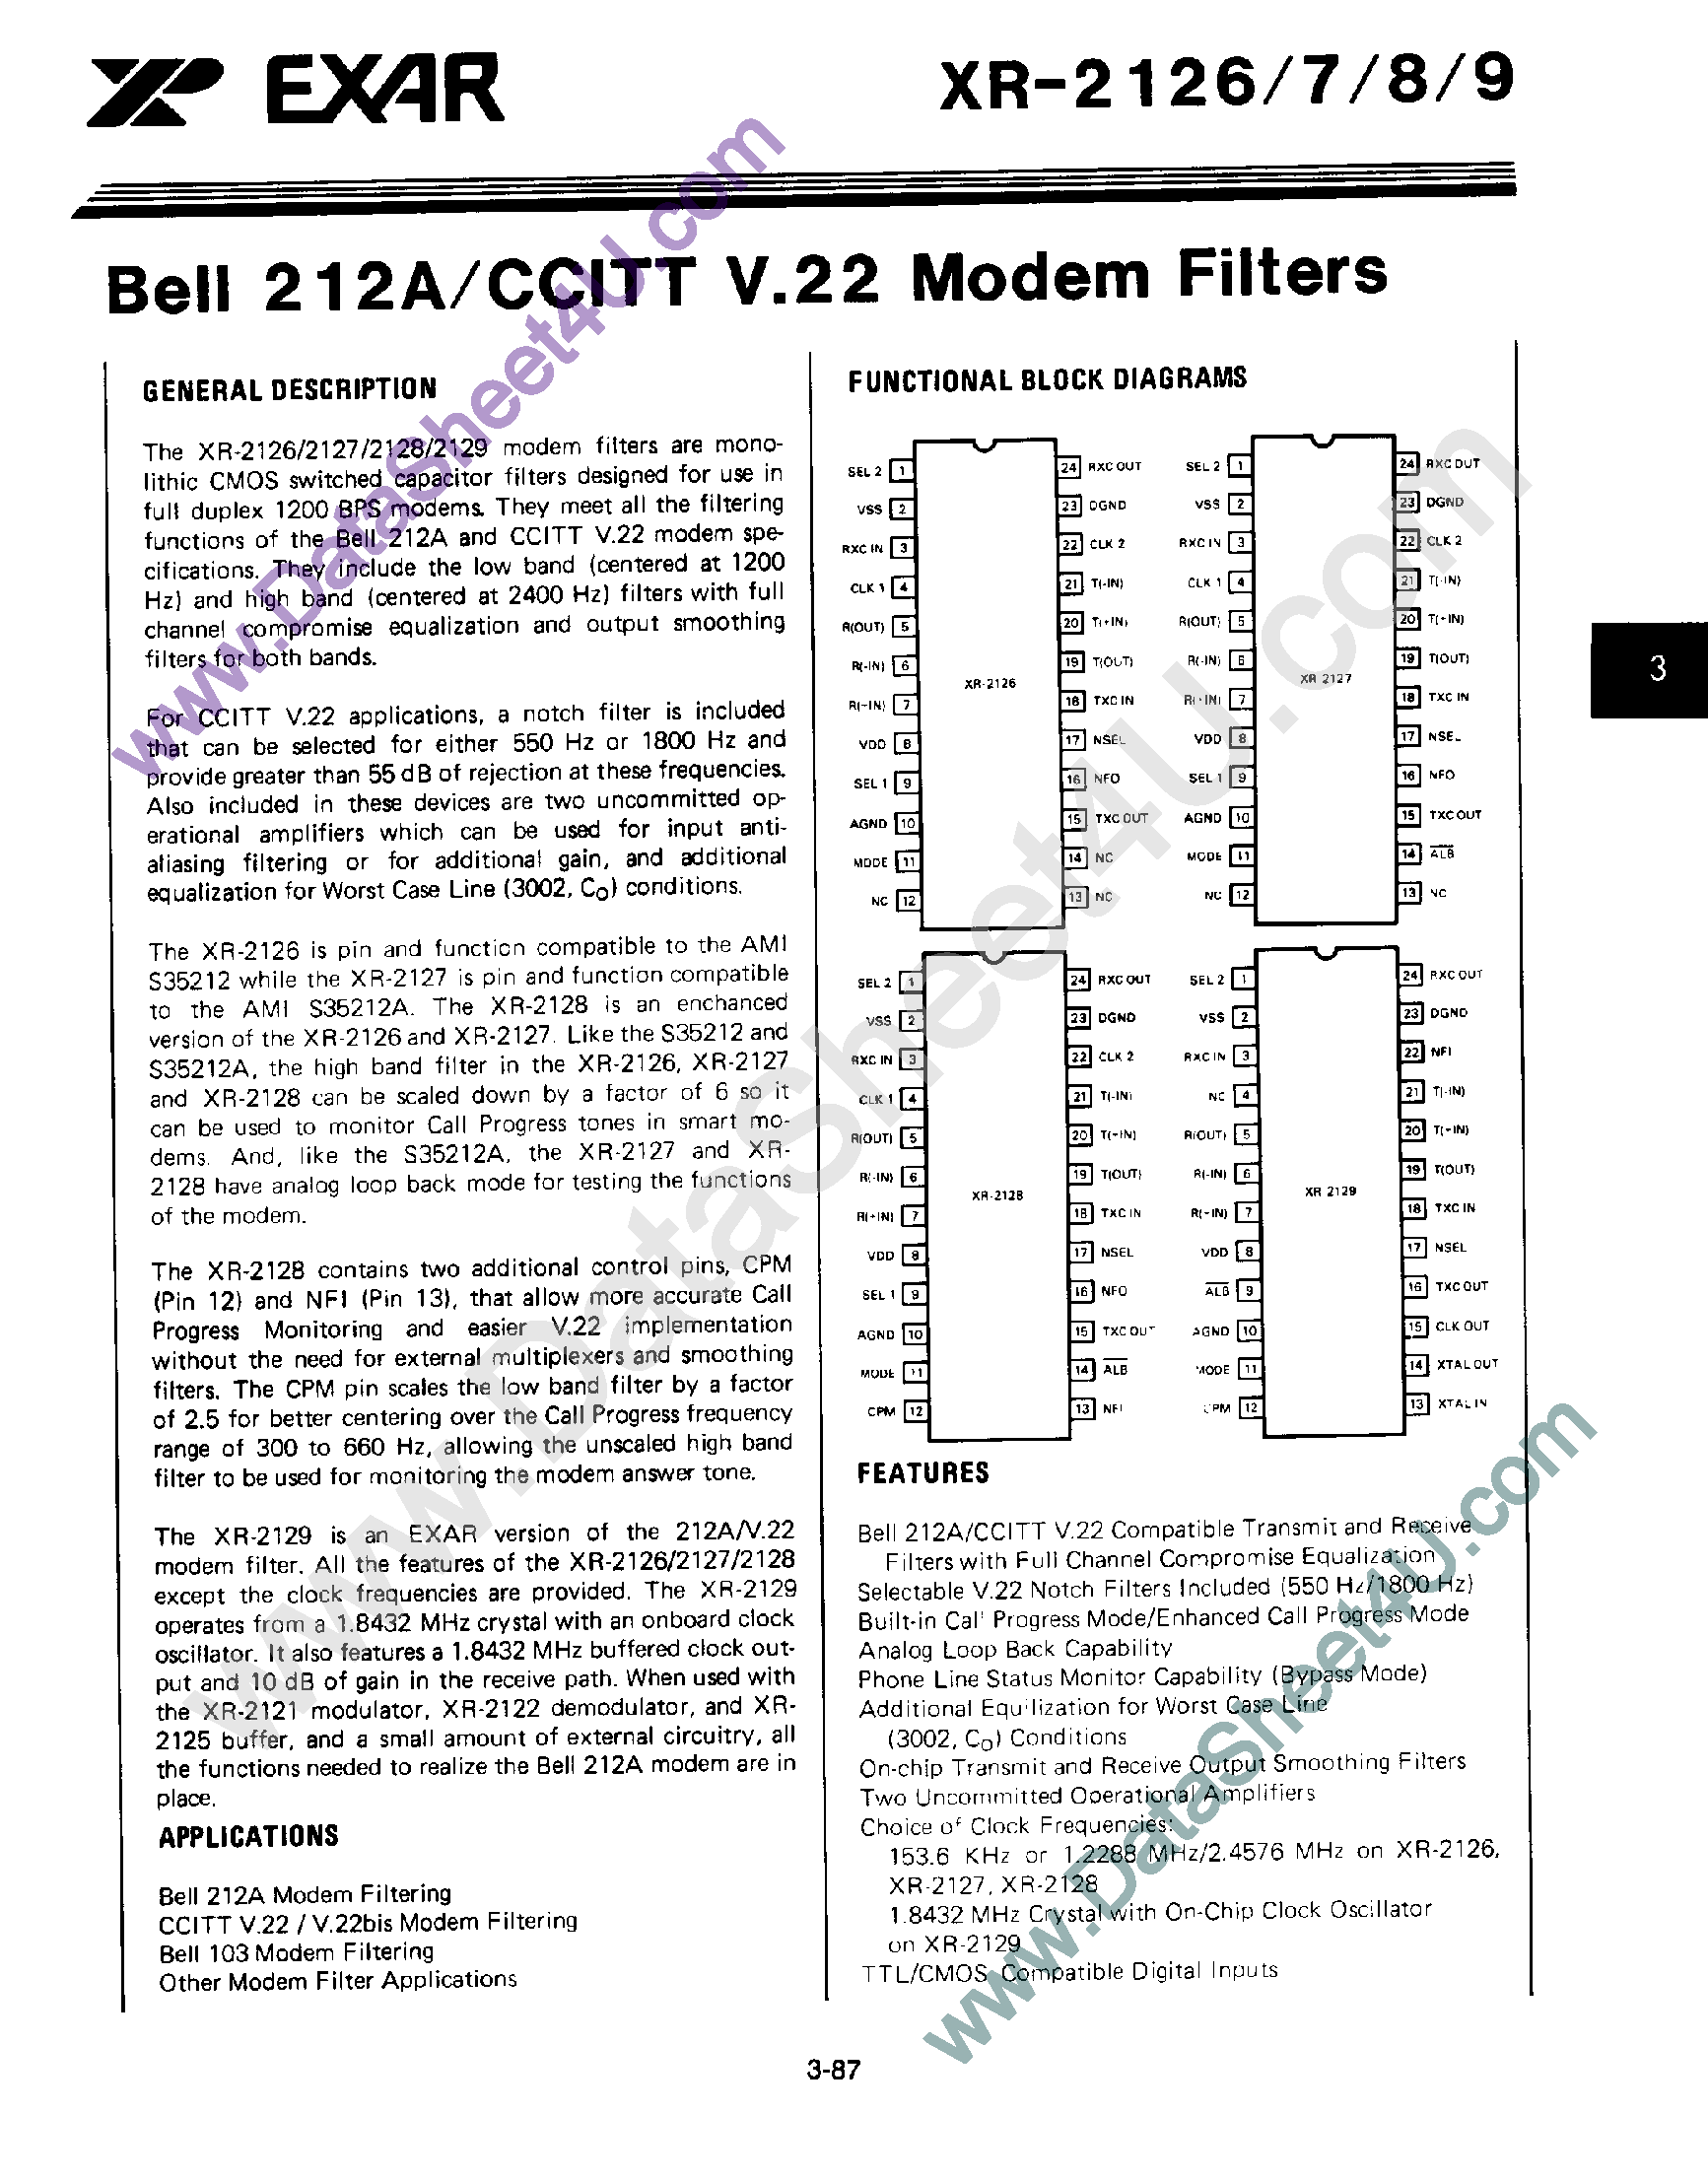 Даташит XR-2126 - Bell 212A / CCITT V.22 Modem Filters страница 1